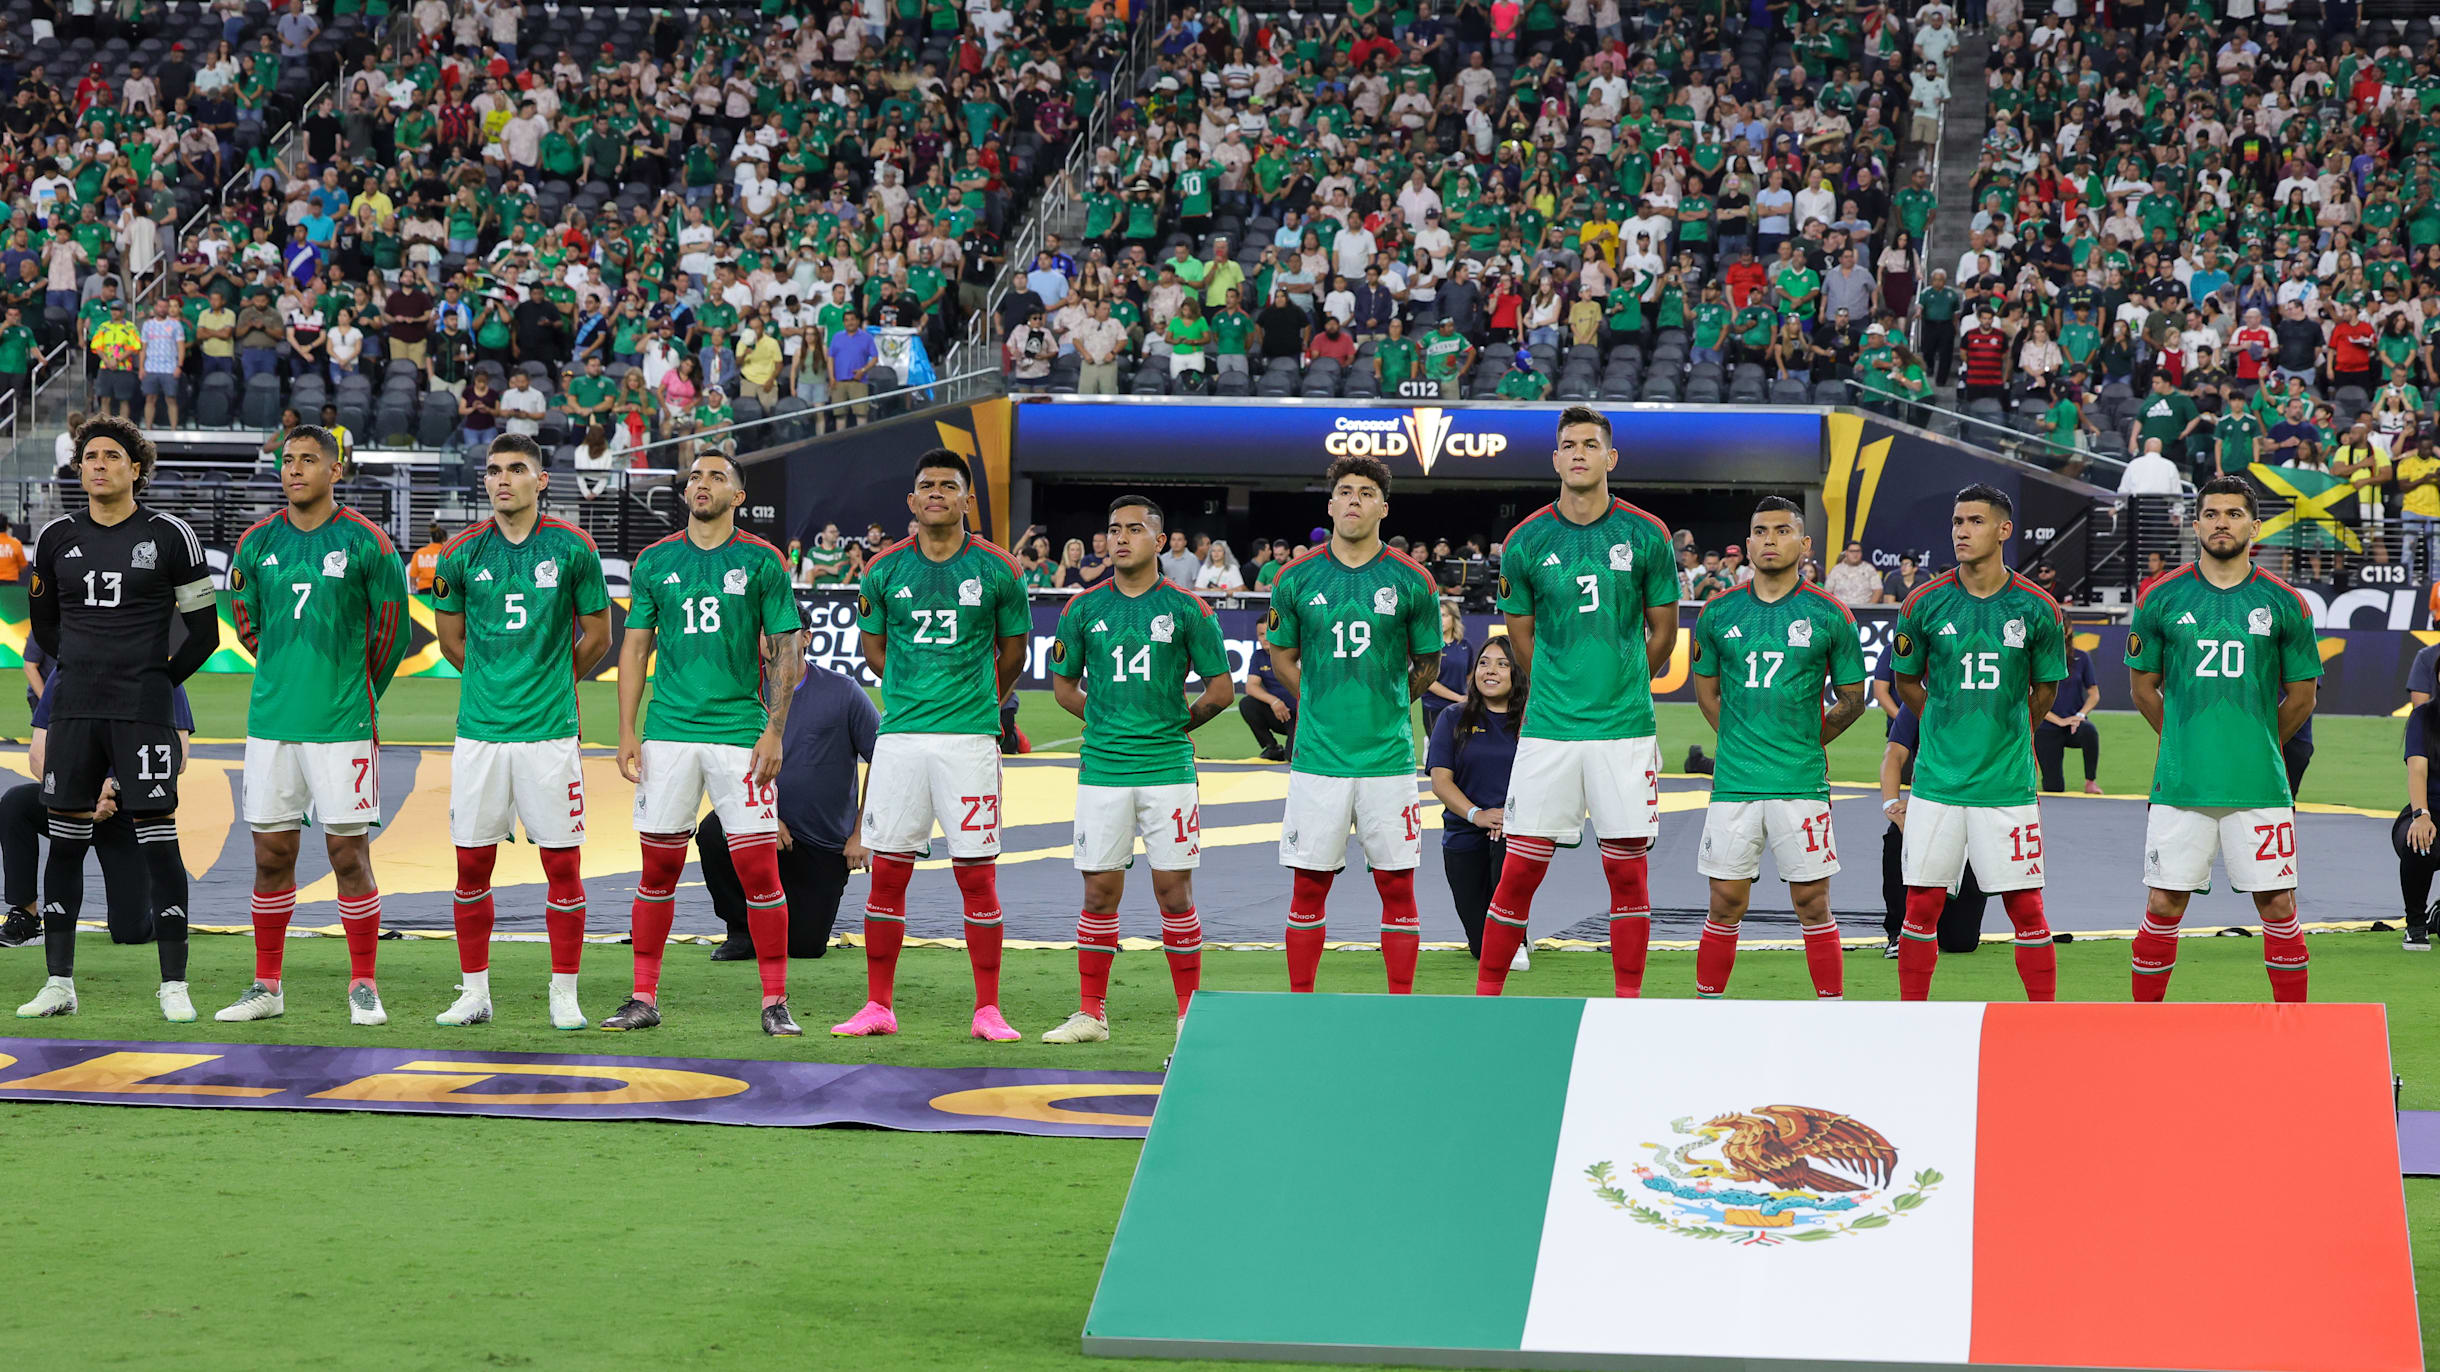 Cuándo juega la Selección Mexicana? El próximo partido del Tri vs. Panamá  por las semifinales de la Nations League